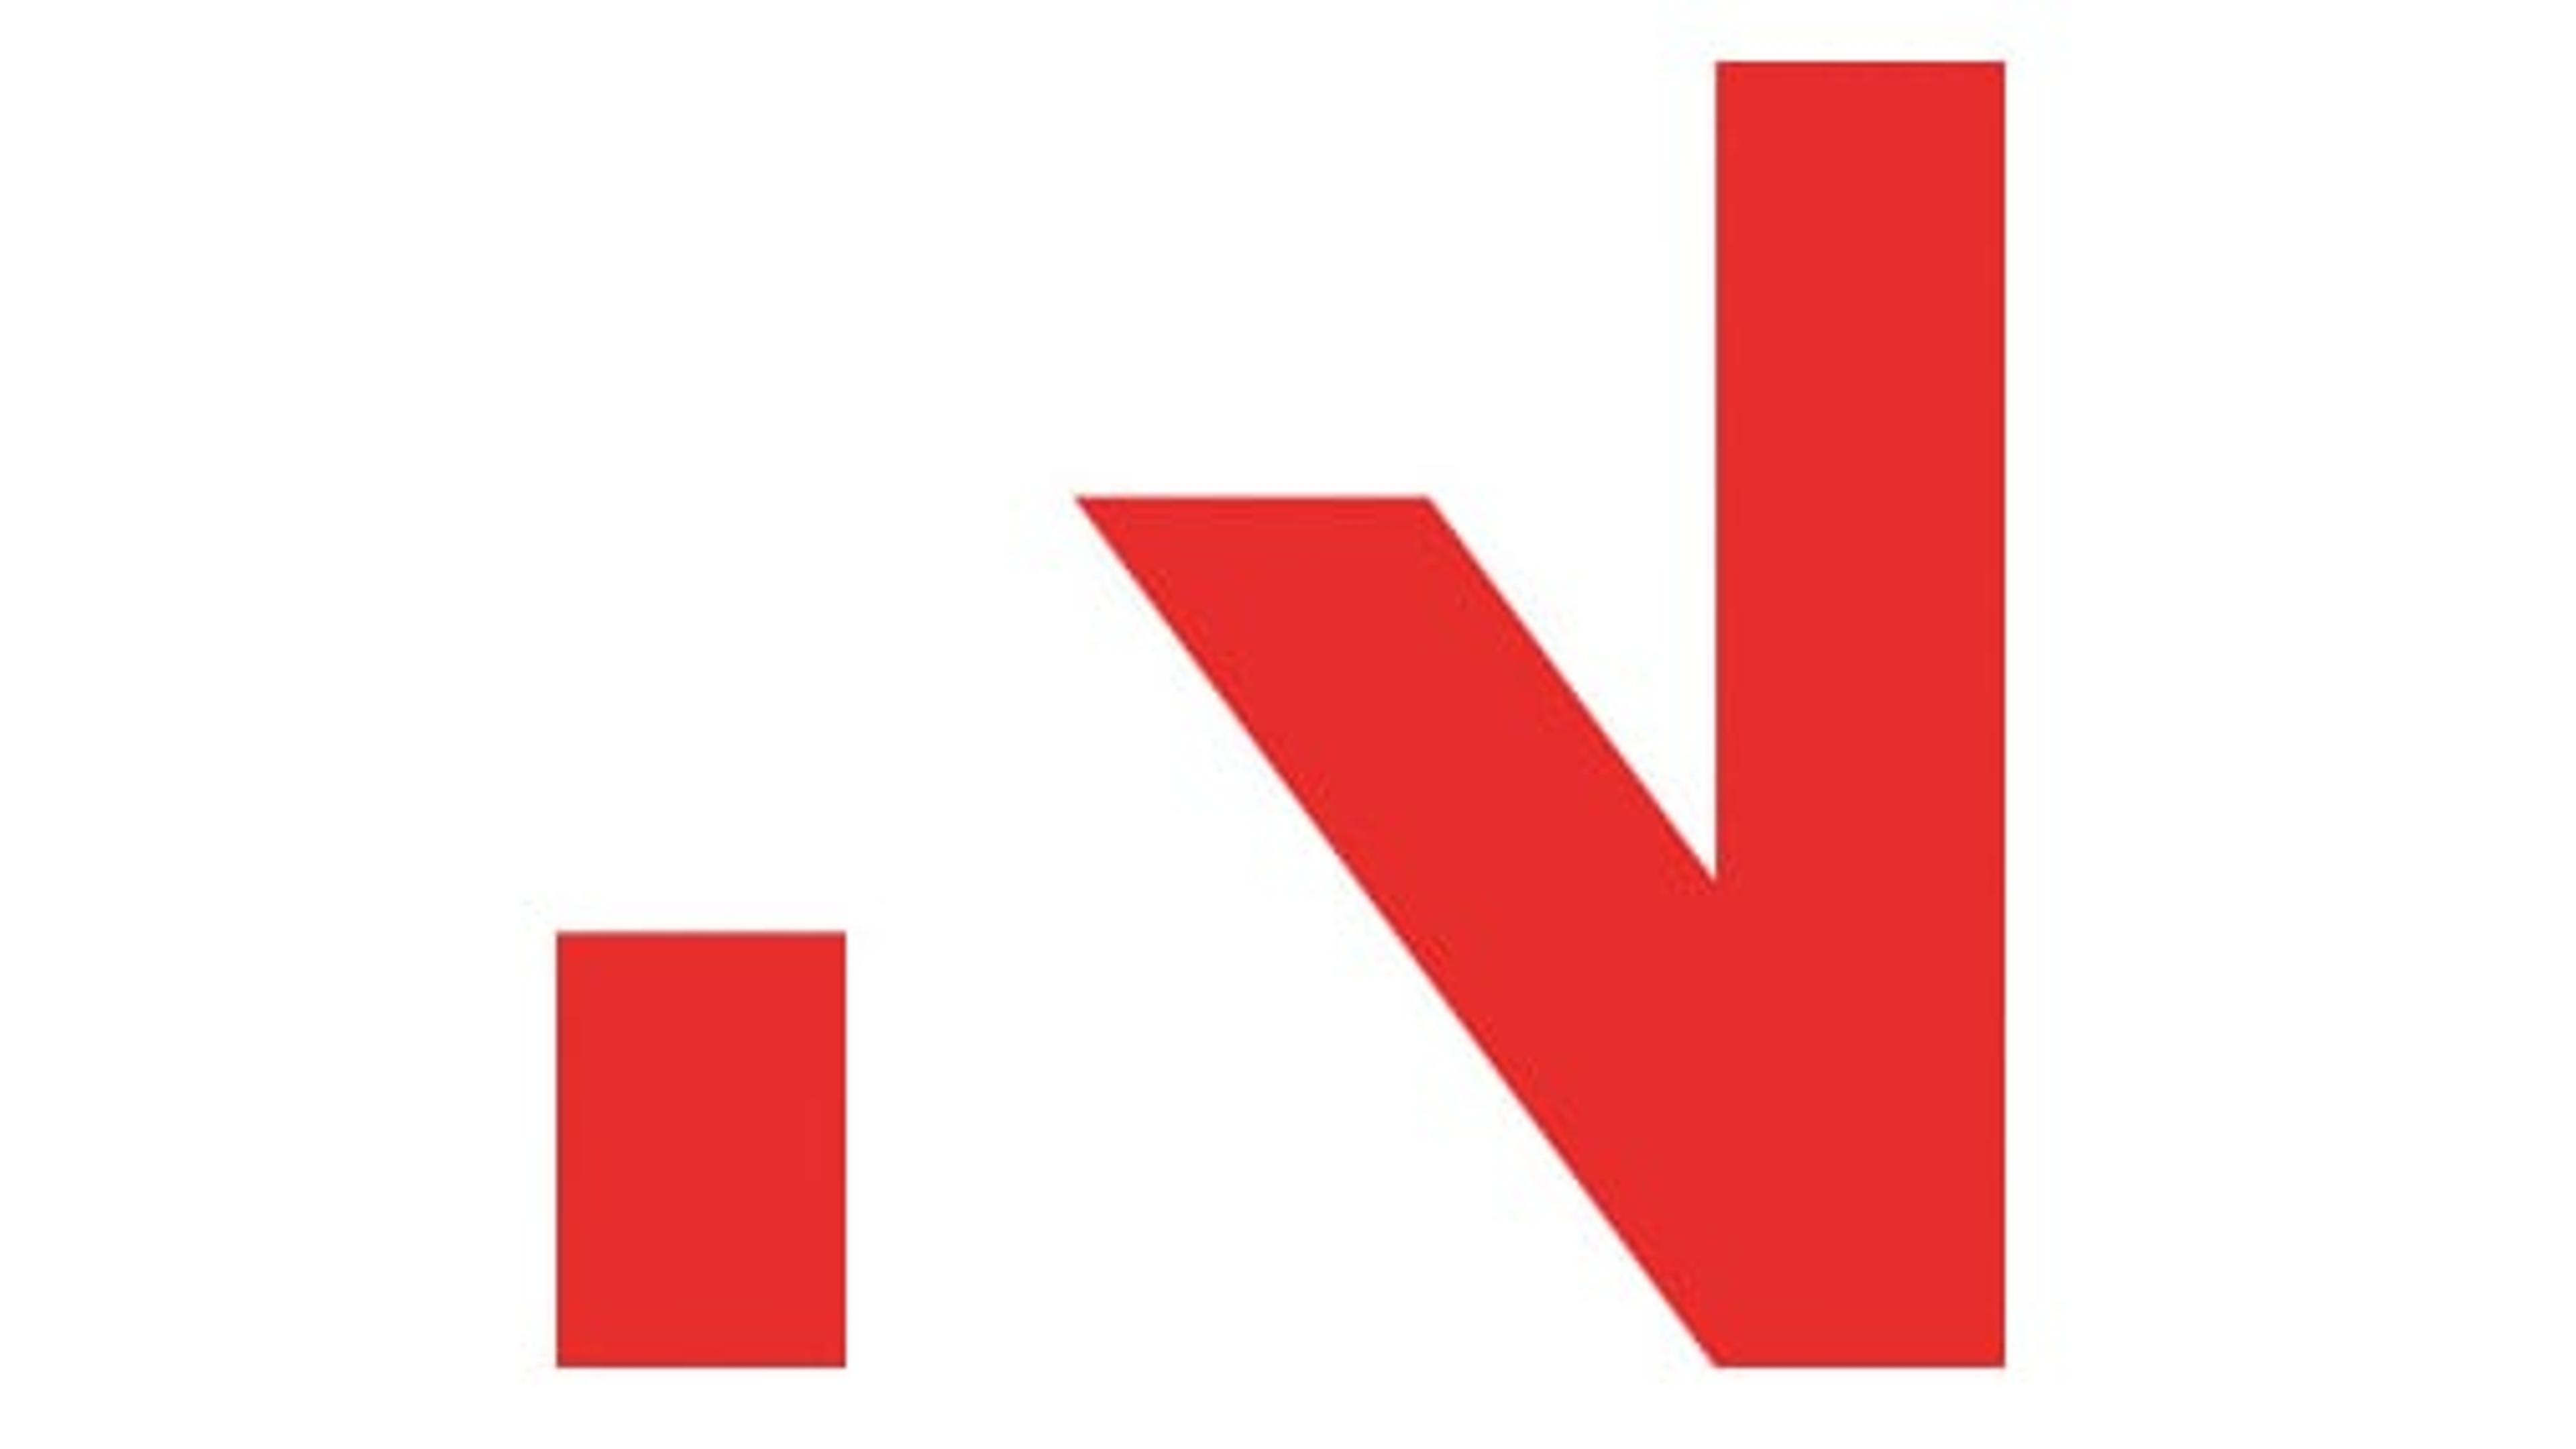 Innovasjon Norge-logo